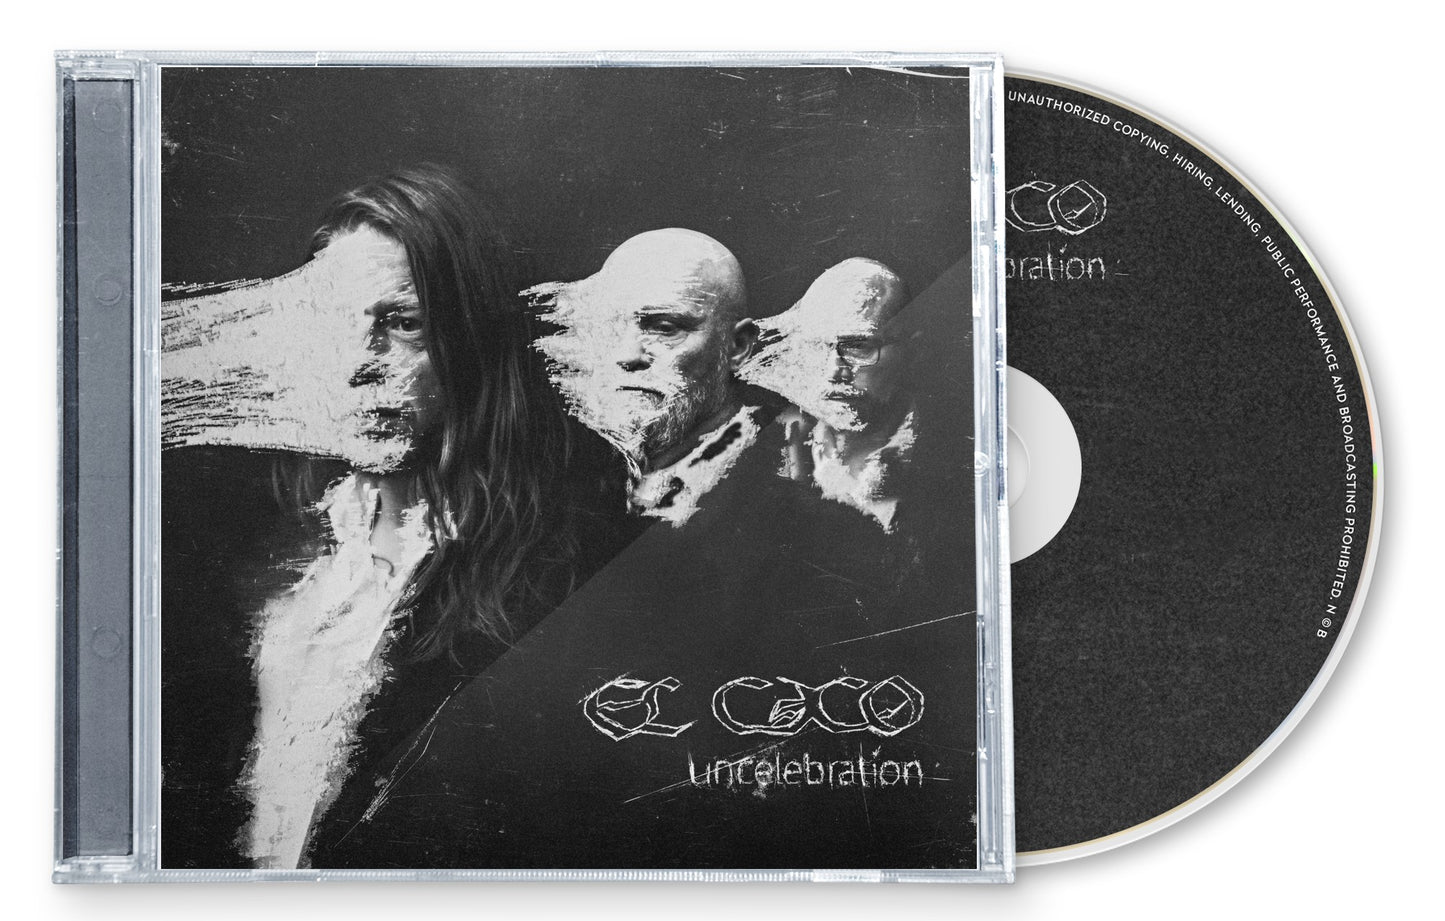 EL CACO -Uncelebration (CD)